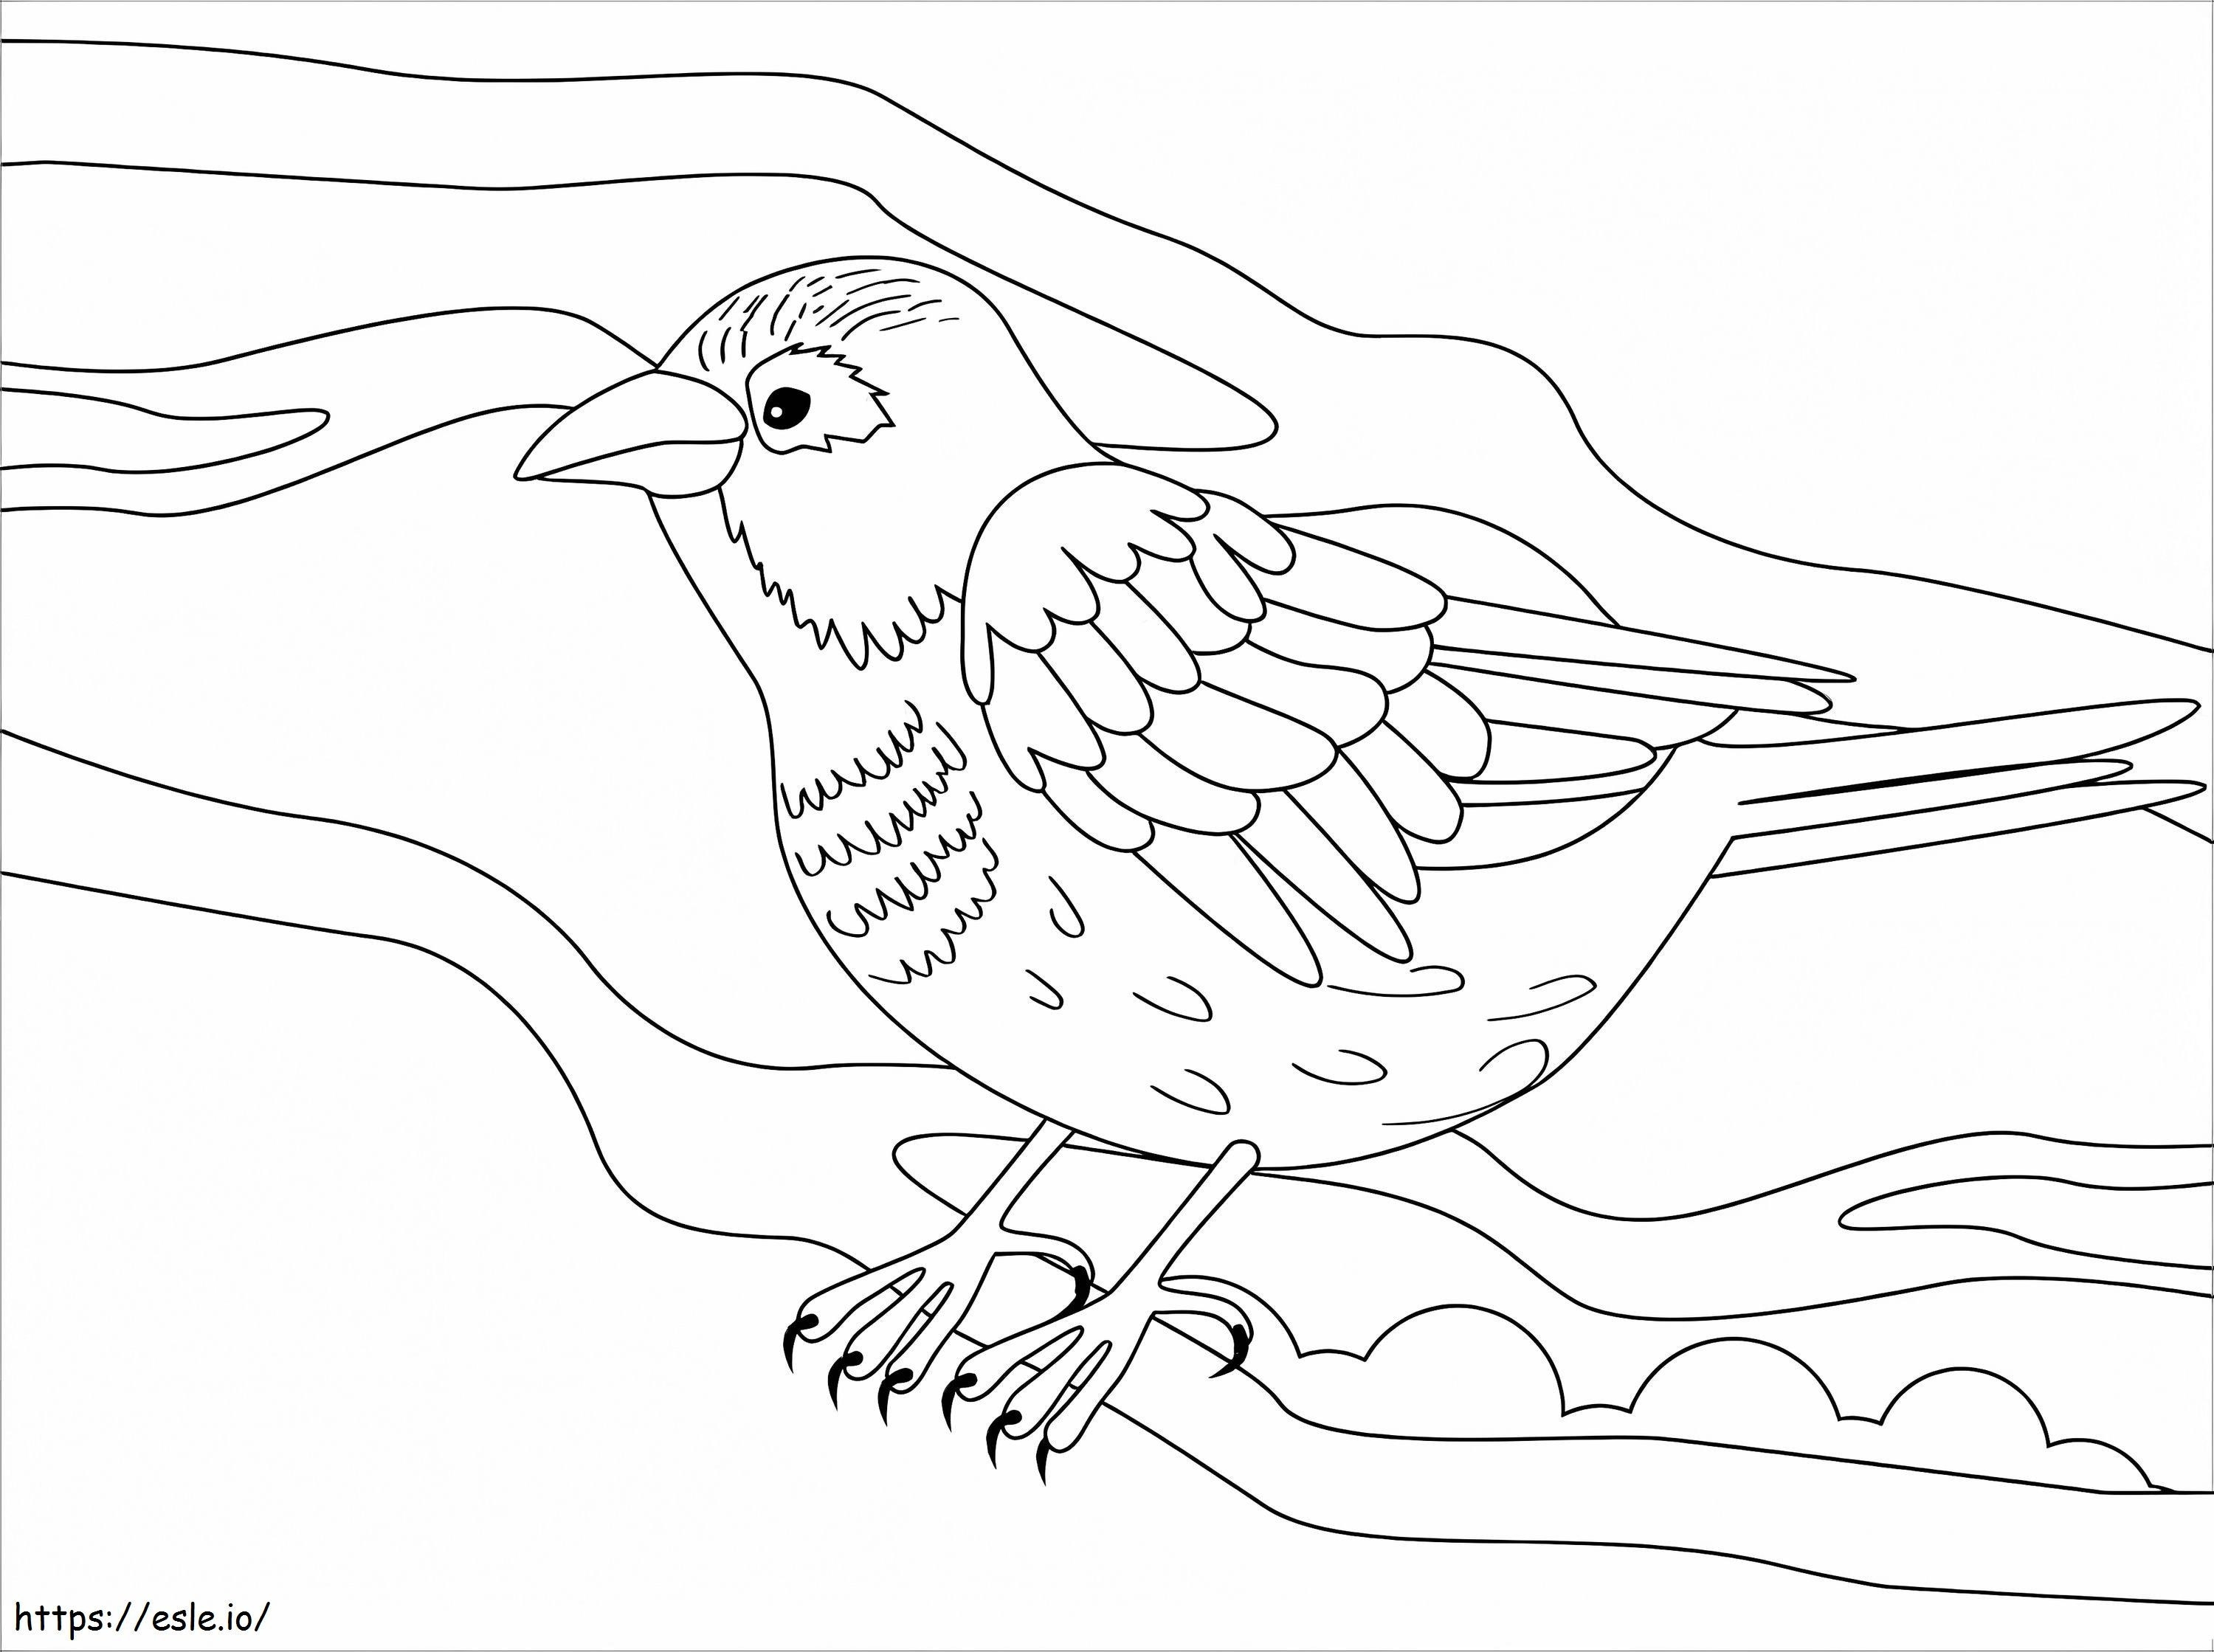 Normal Sparrow coloring page